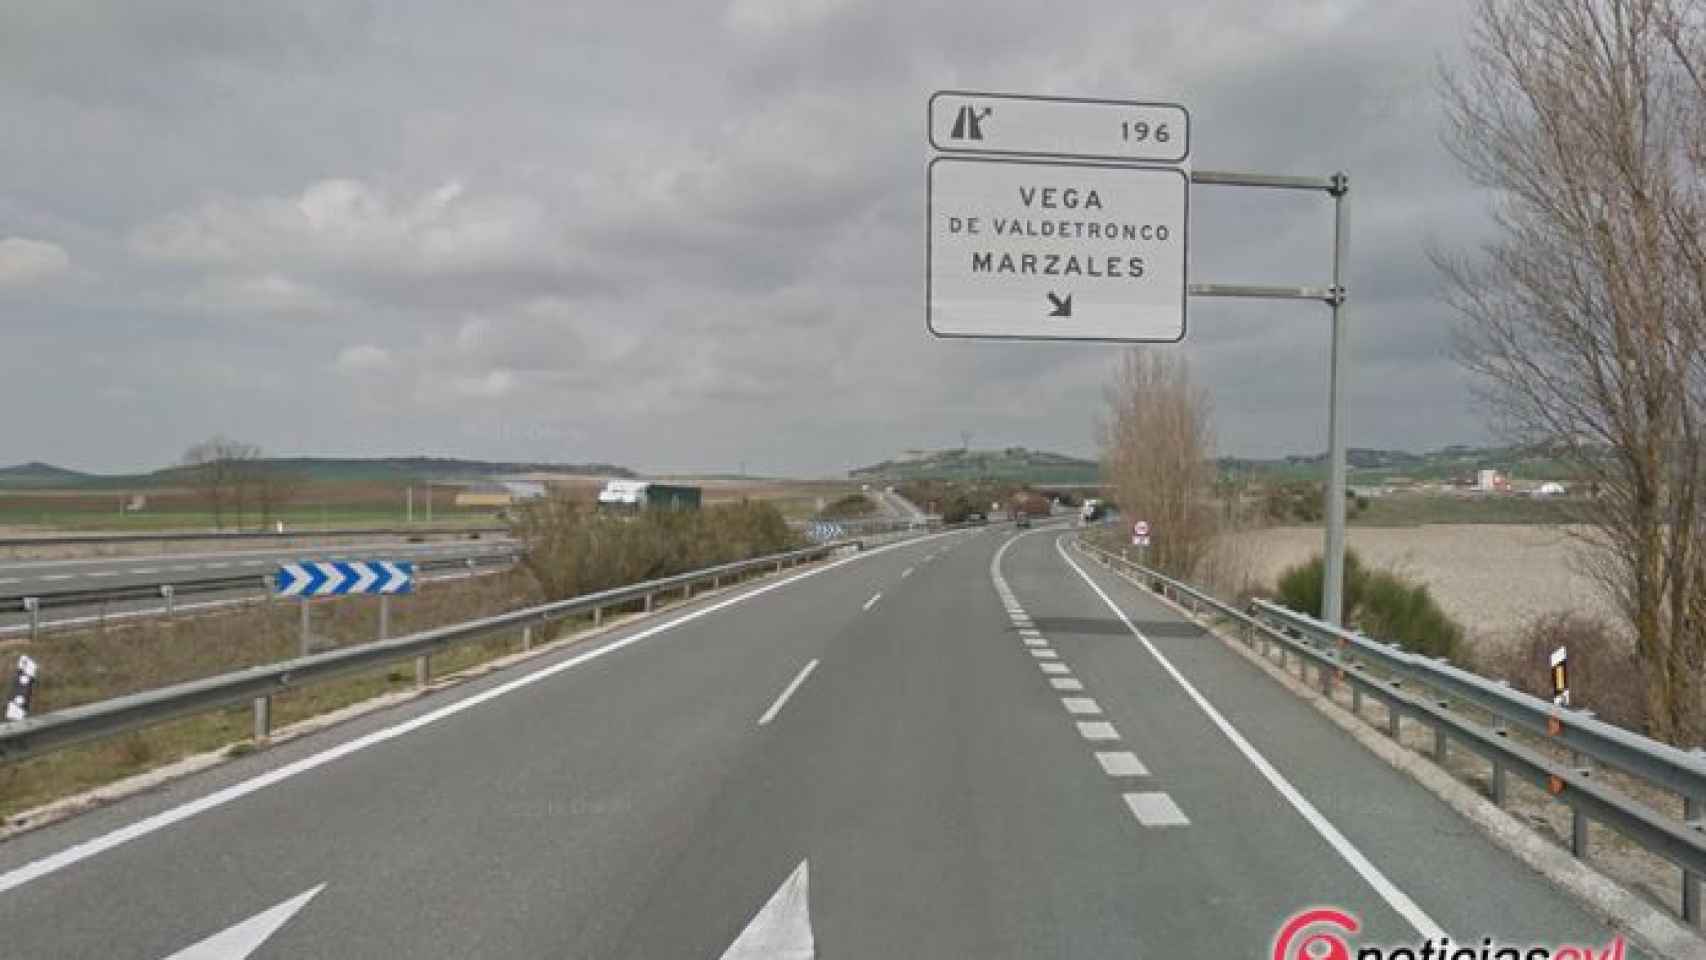 Valladolid-Vega-de-valdetronco-accidente-trafico